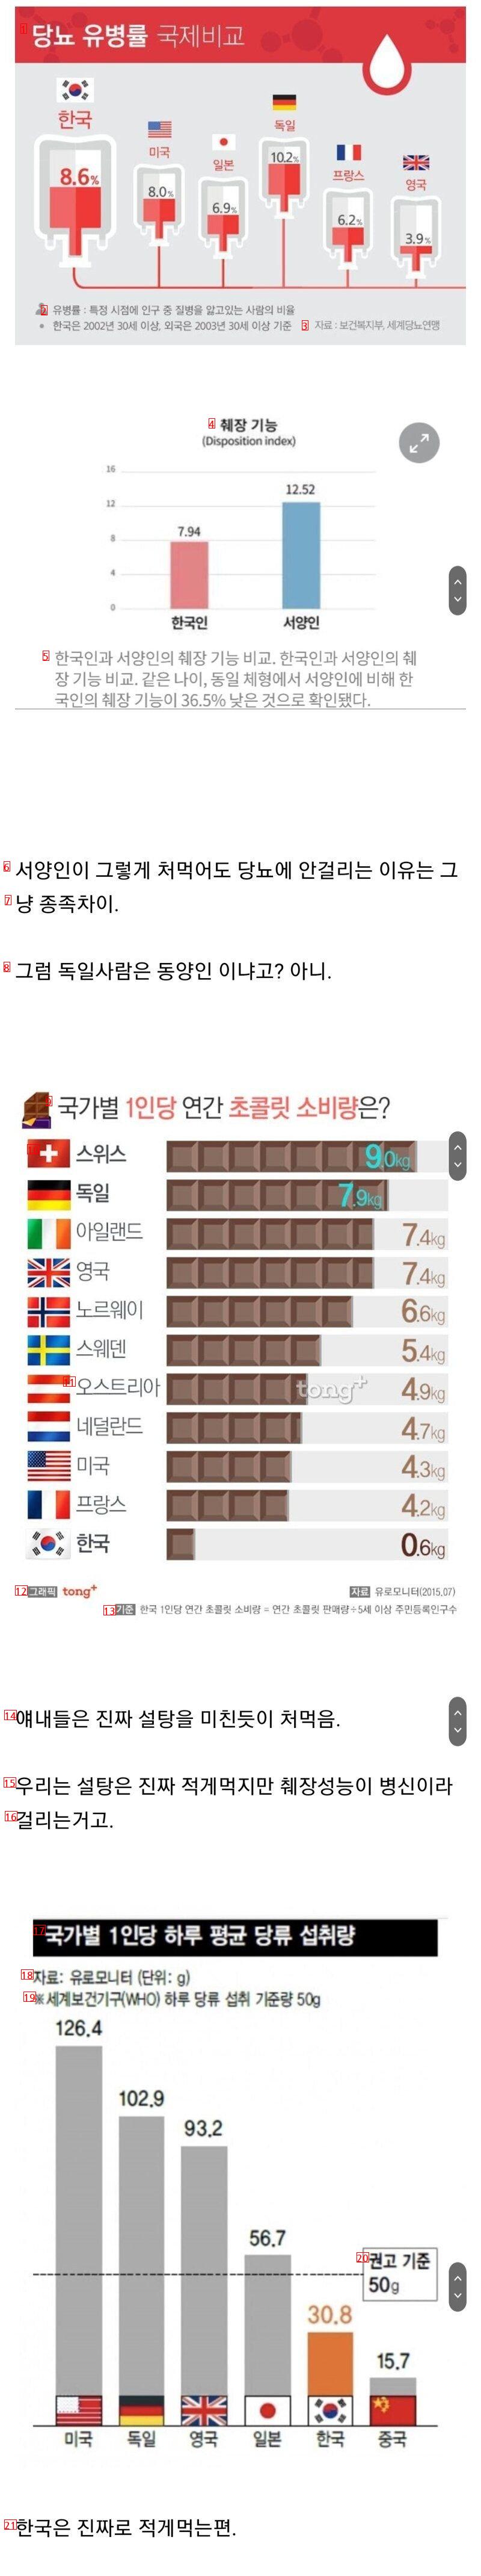 ●韓国にとりわけ糖尿病人が多い理由